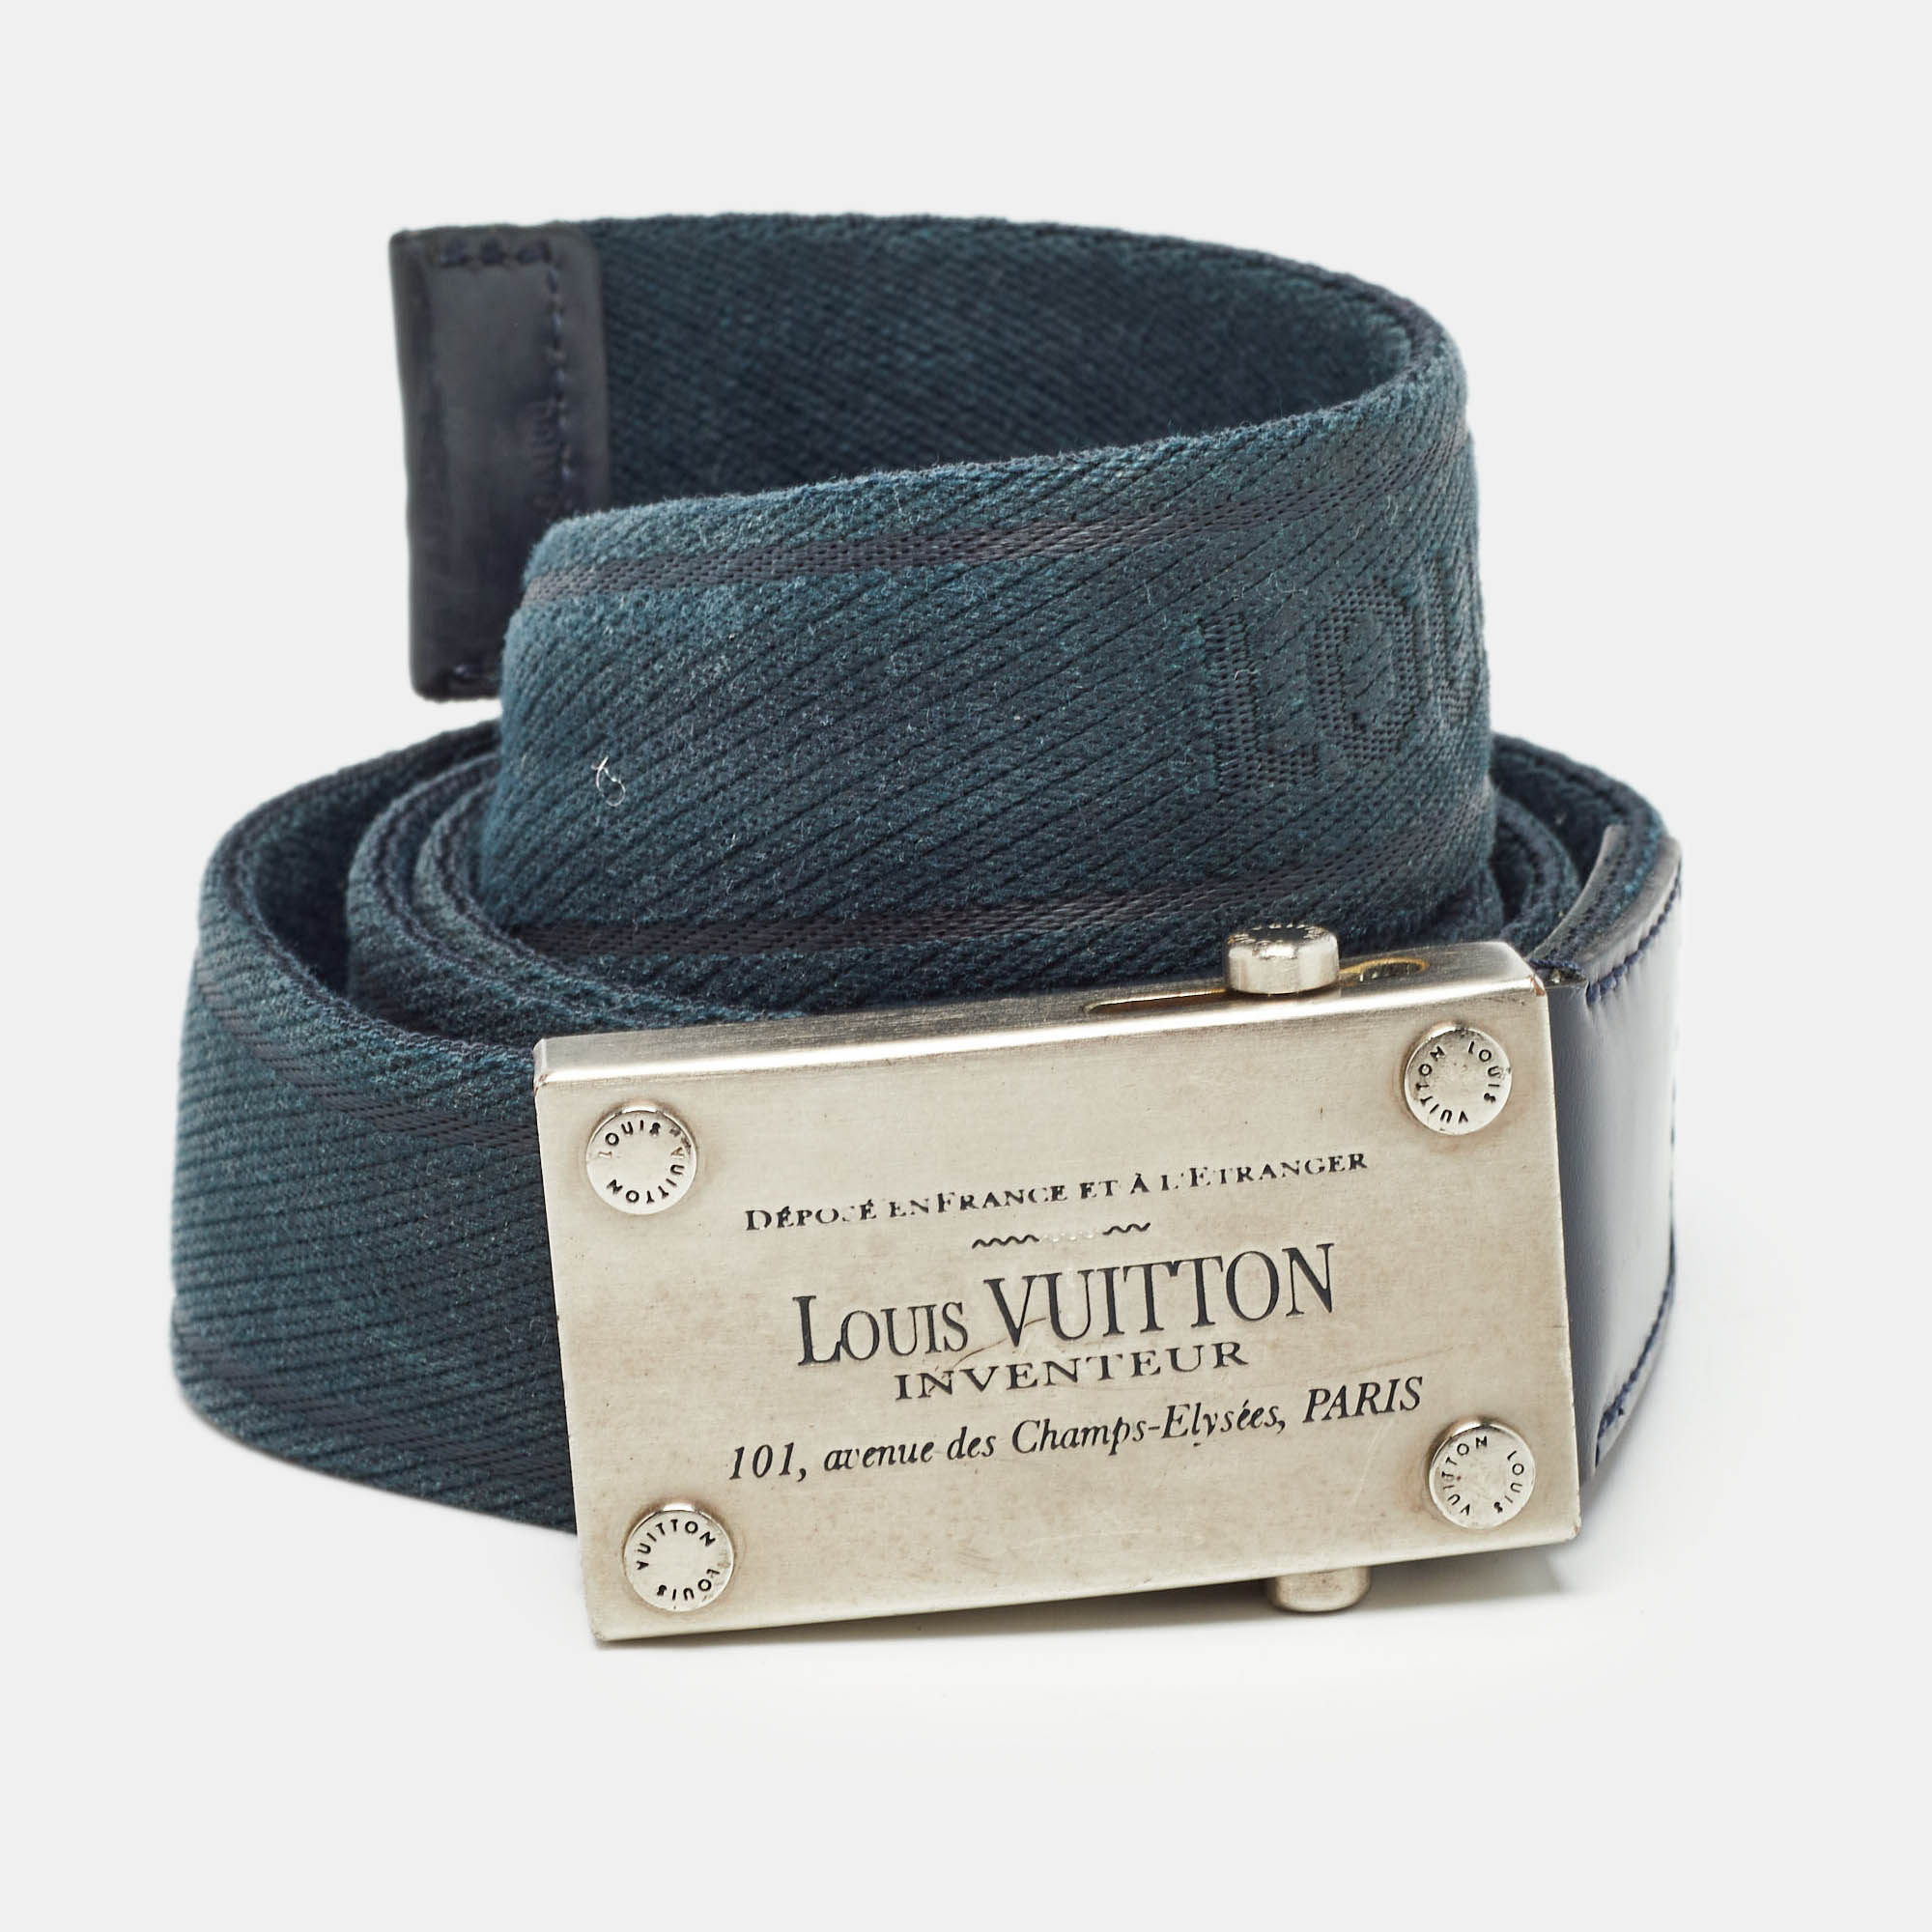 

Louis Vuitton Blue Canvas Inventeur Belt